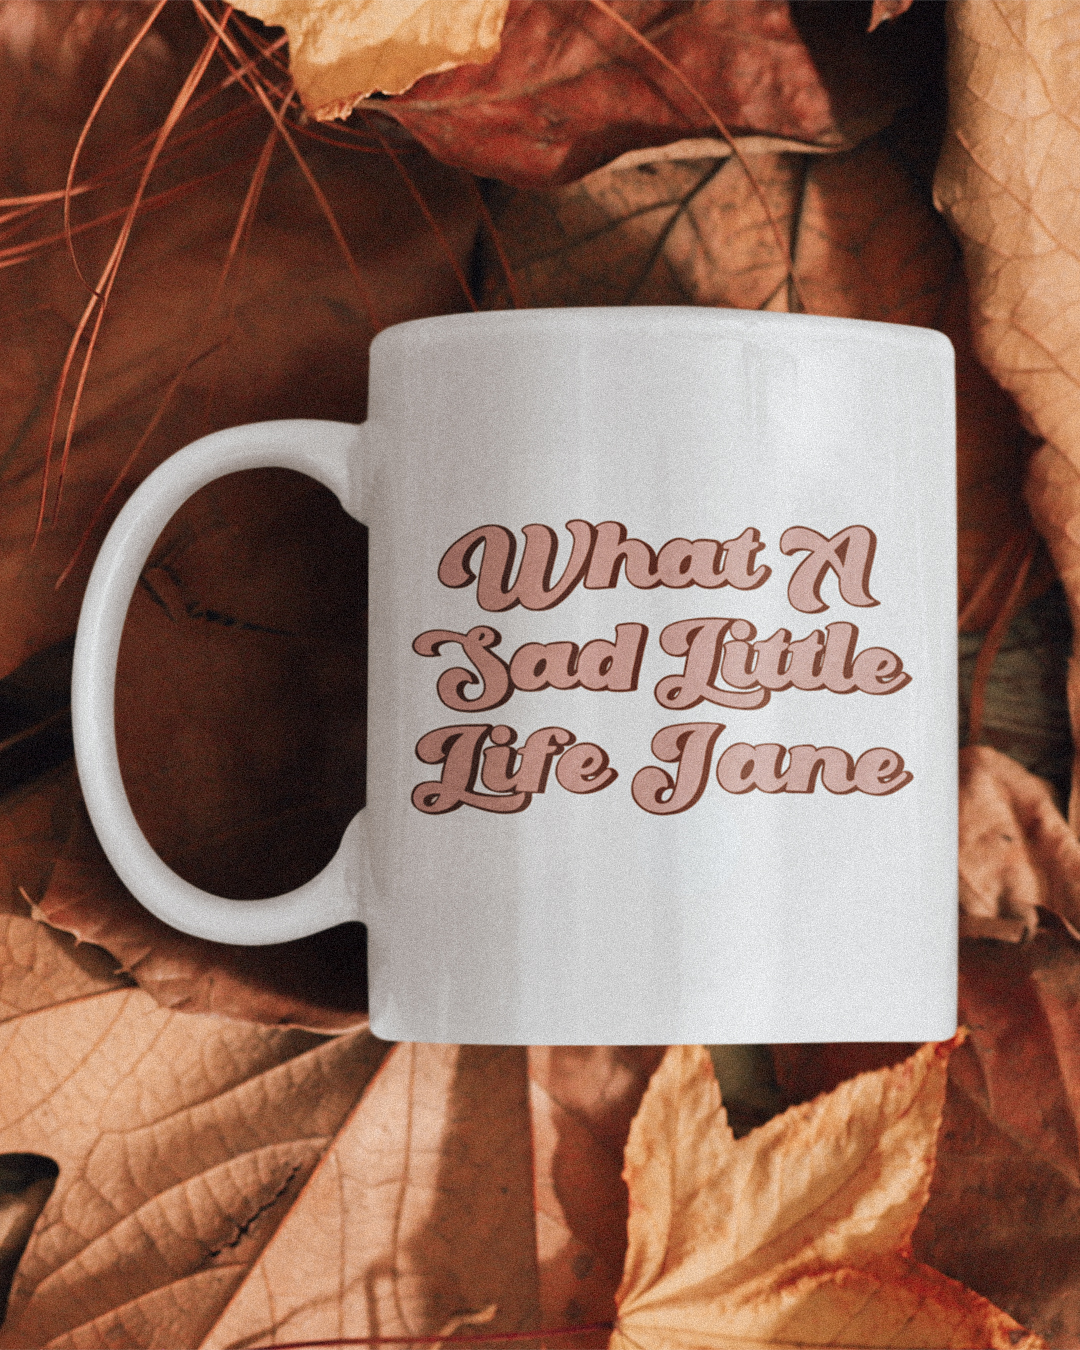 What A Sad Little Life Jane Mug - Come Dine With Me Inspired Mug - British Humour Mug - What A Sad Little Life Jane Mug